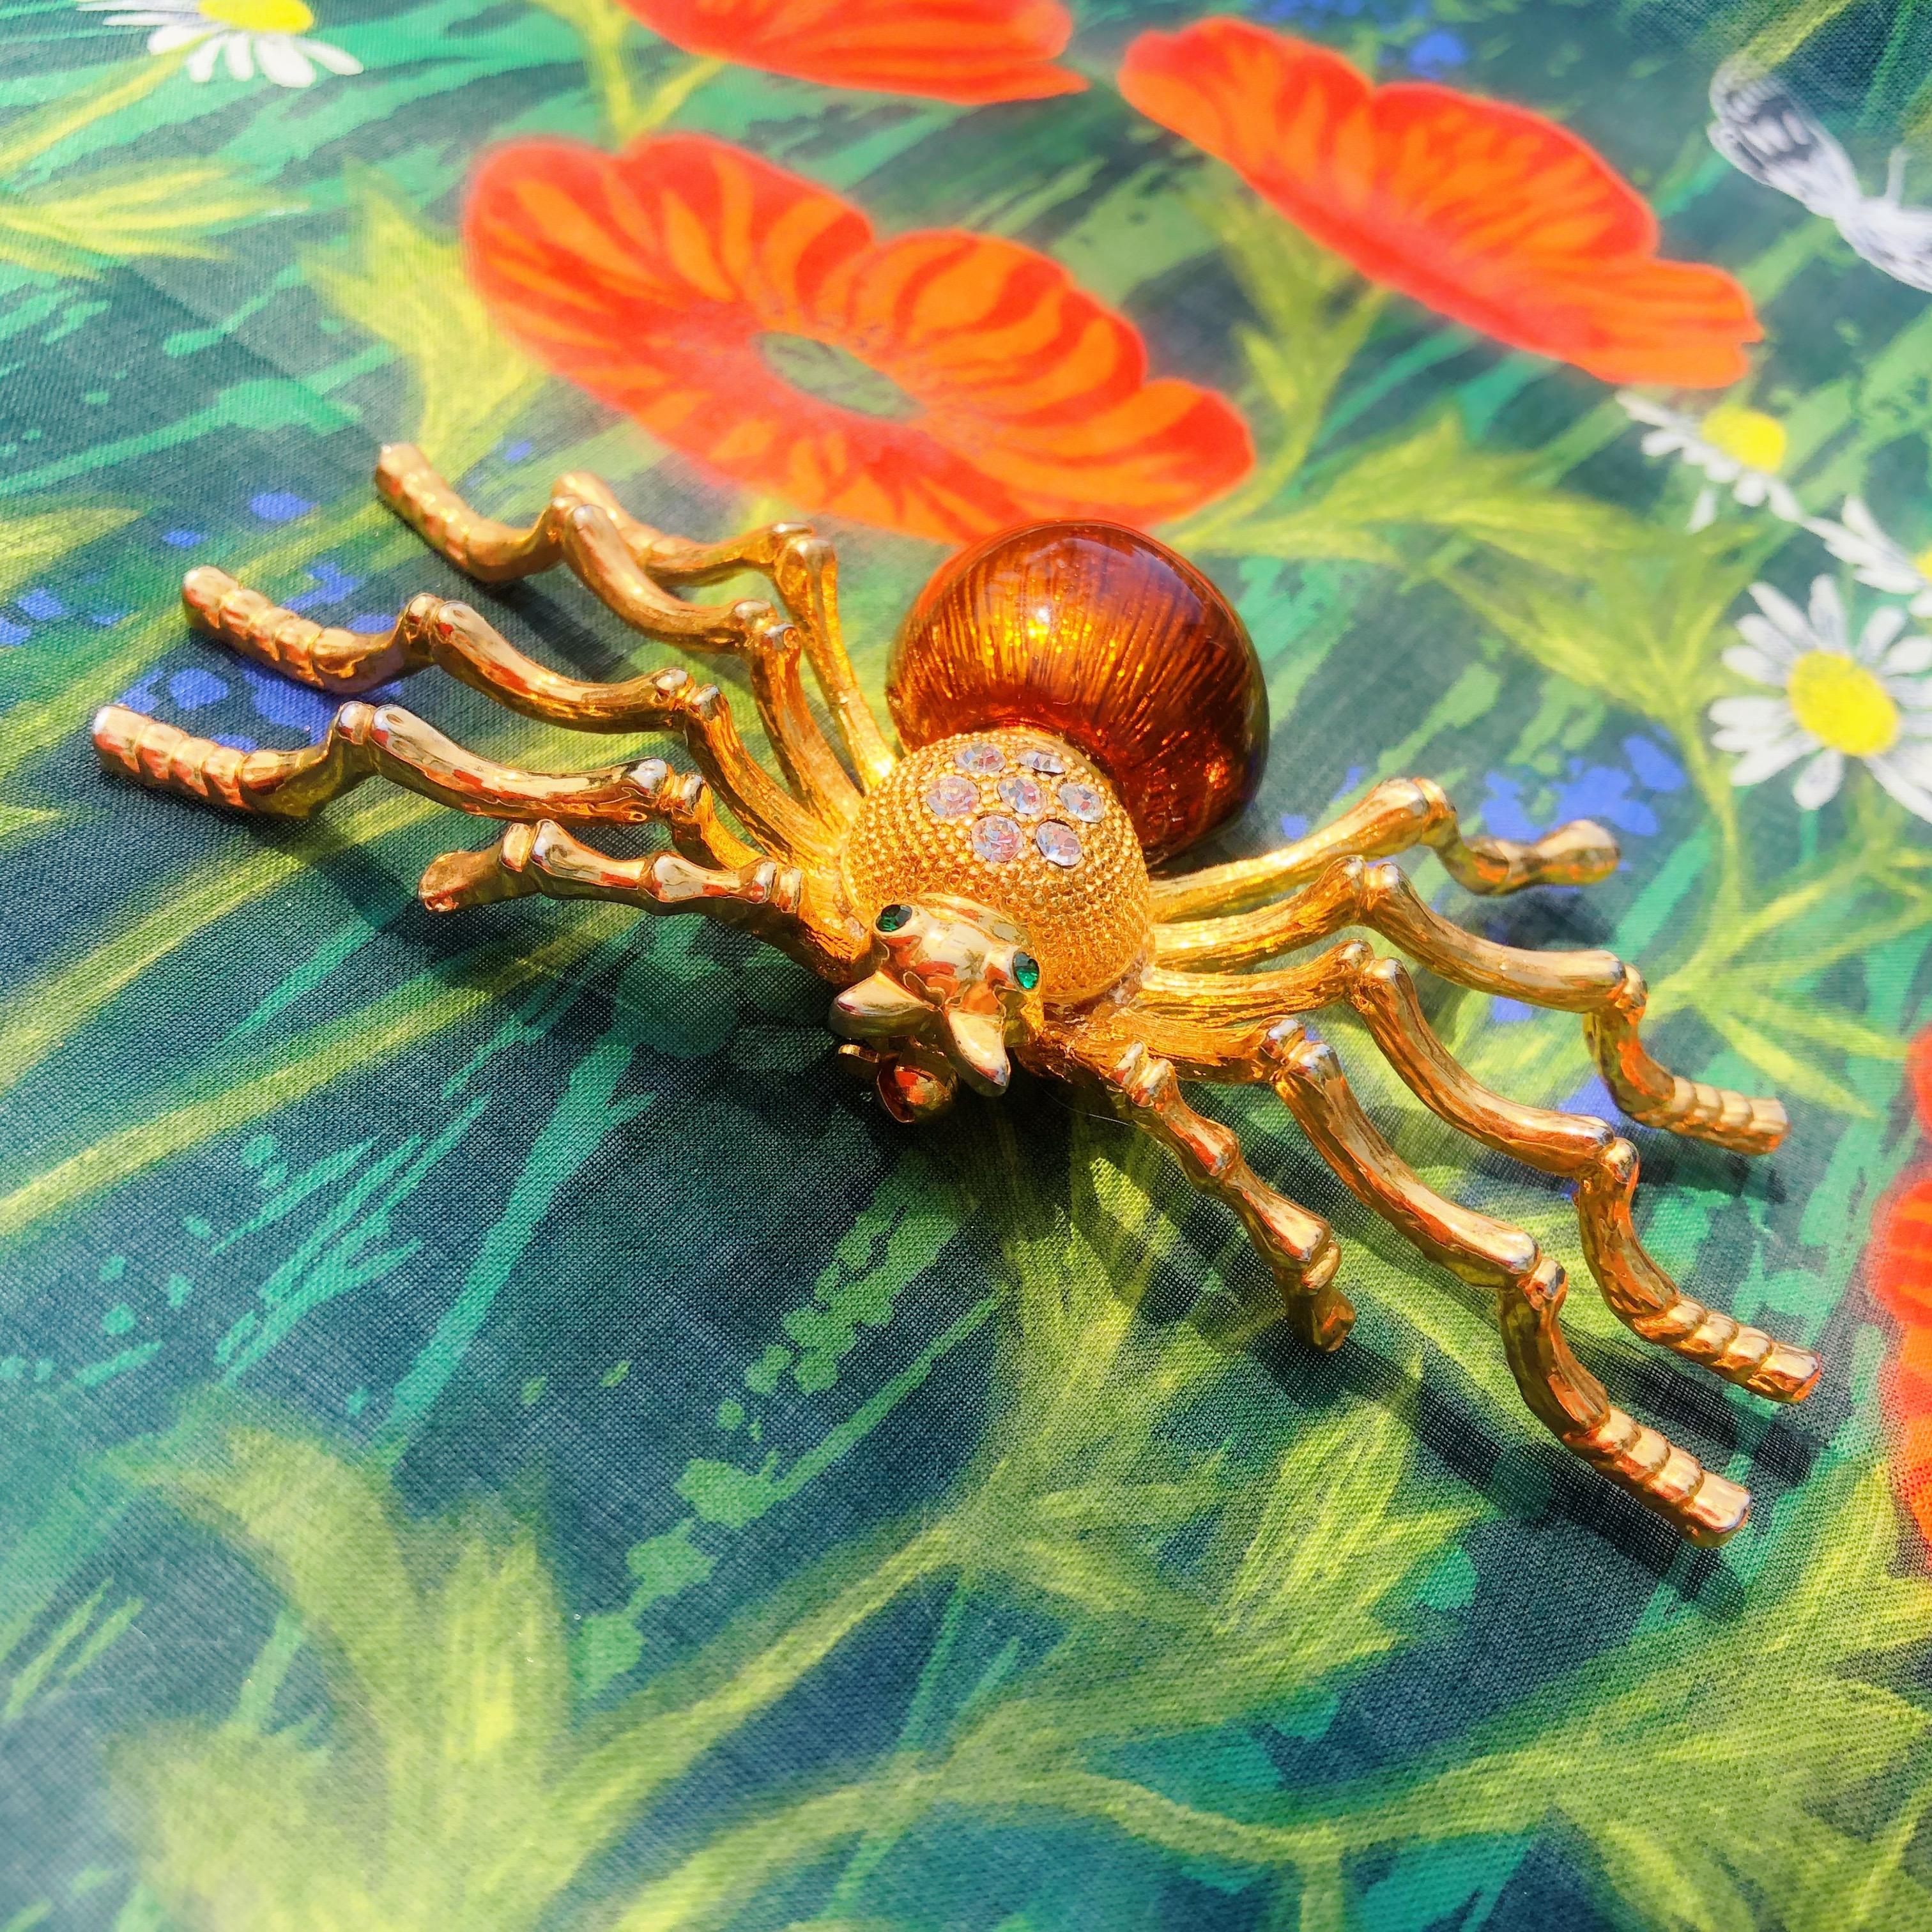 Äußerst seltene und außergewöhnliche Fantasie-Brosche mit figuraler Spinne, ca. 1980er Jahre.

DETAILS:
- Vergoldet
- Klare und smaragdfarbene Strasssteine
- Braun emailliert
- 4.5